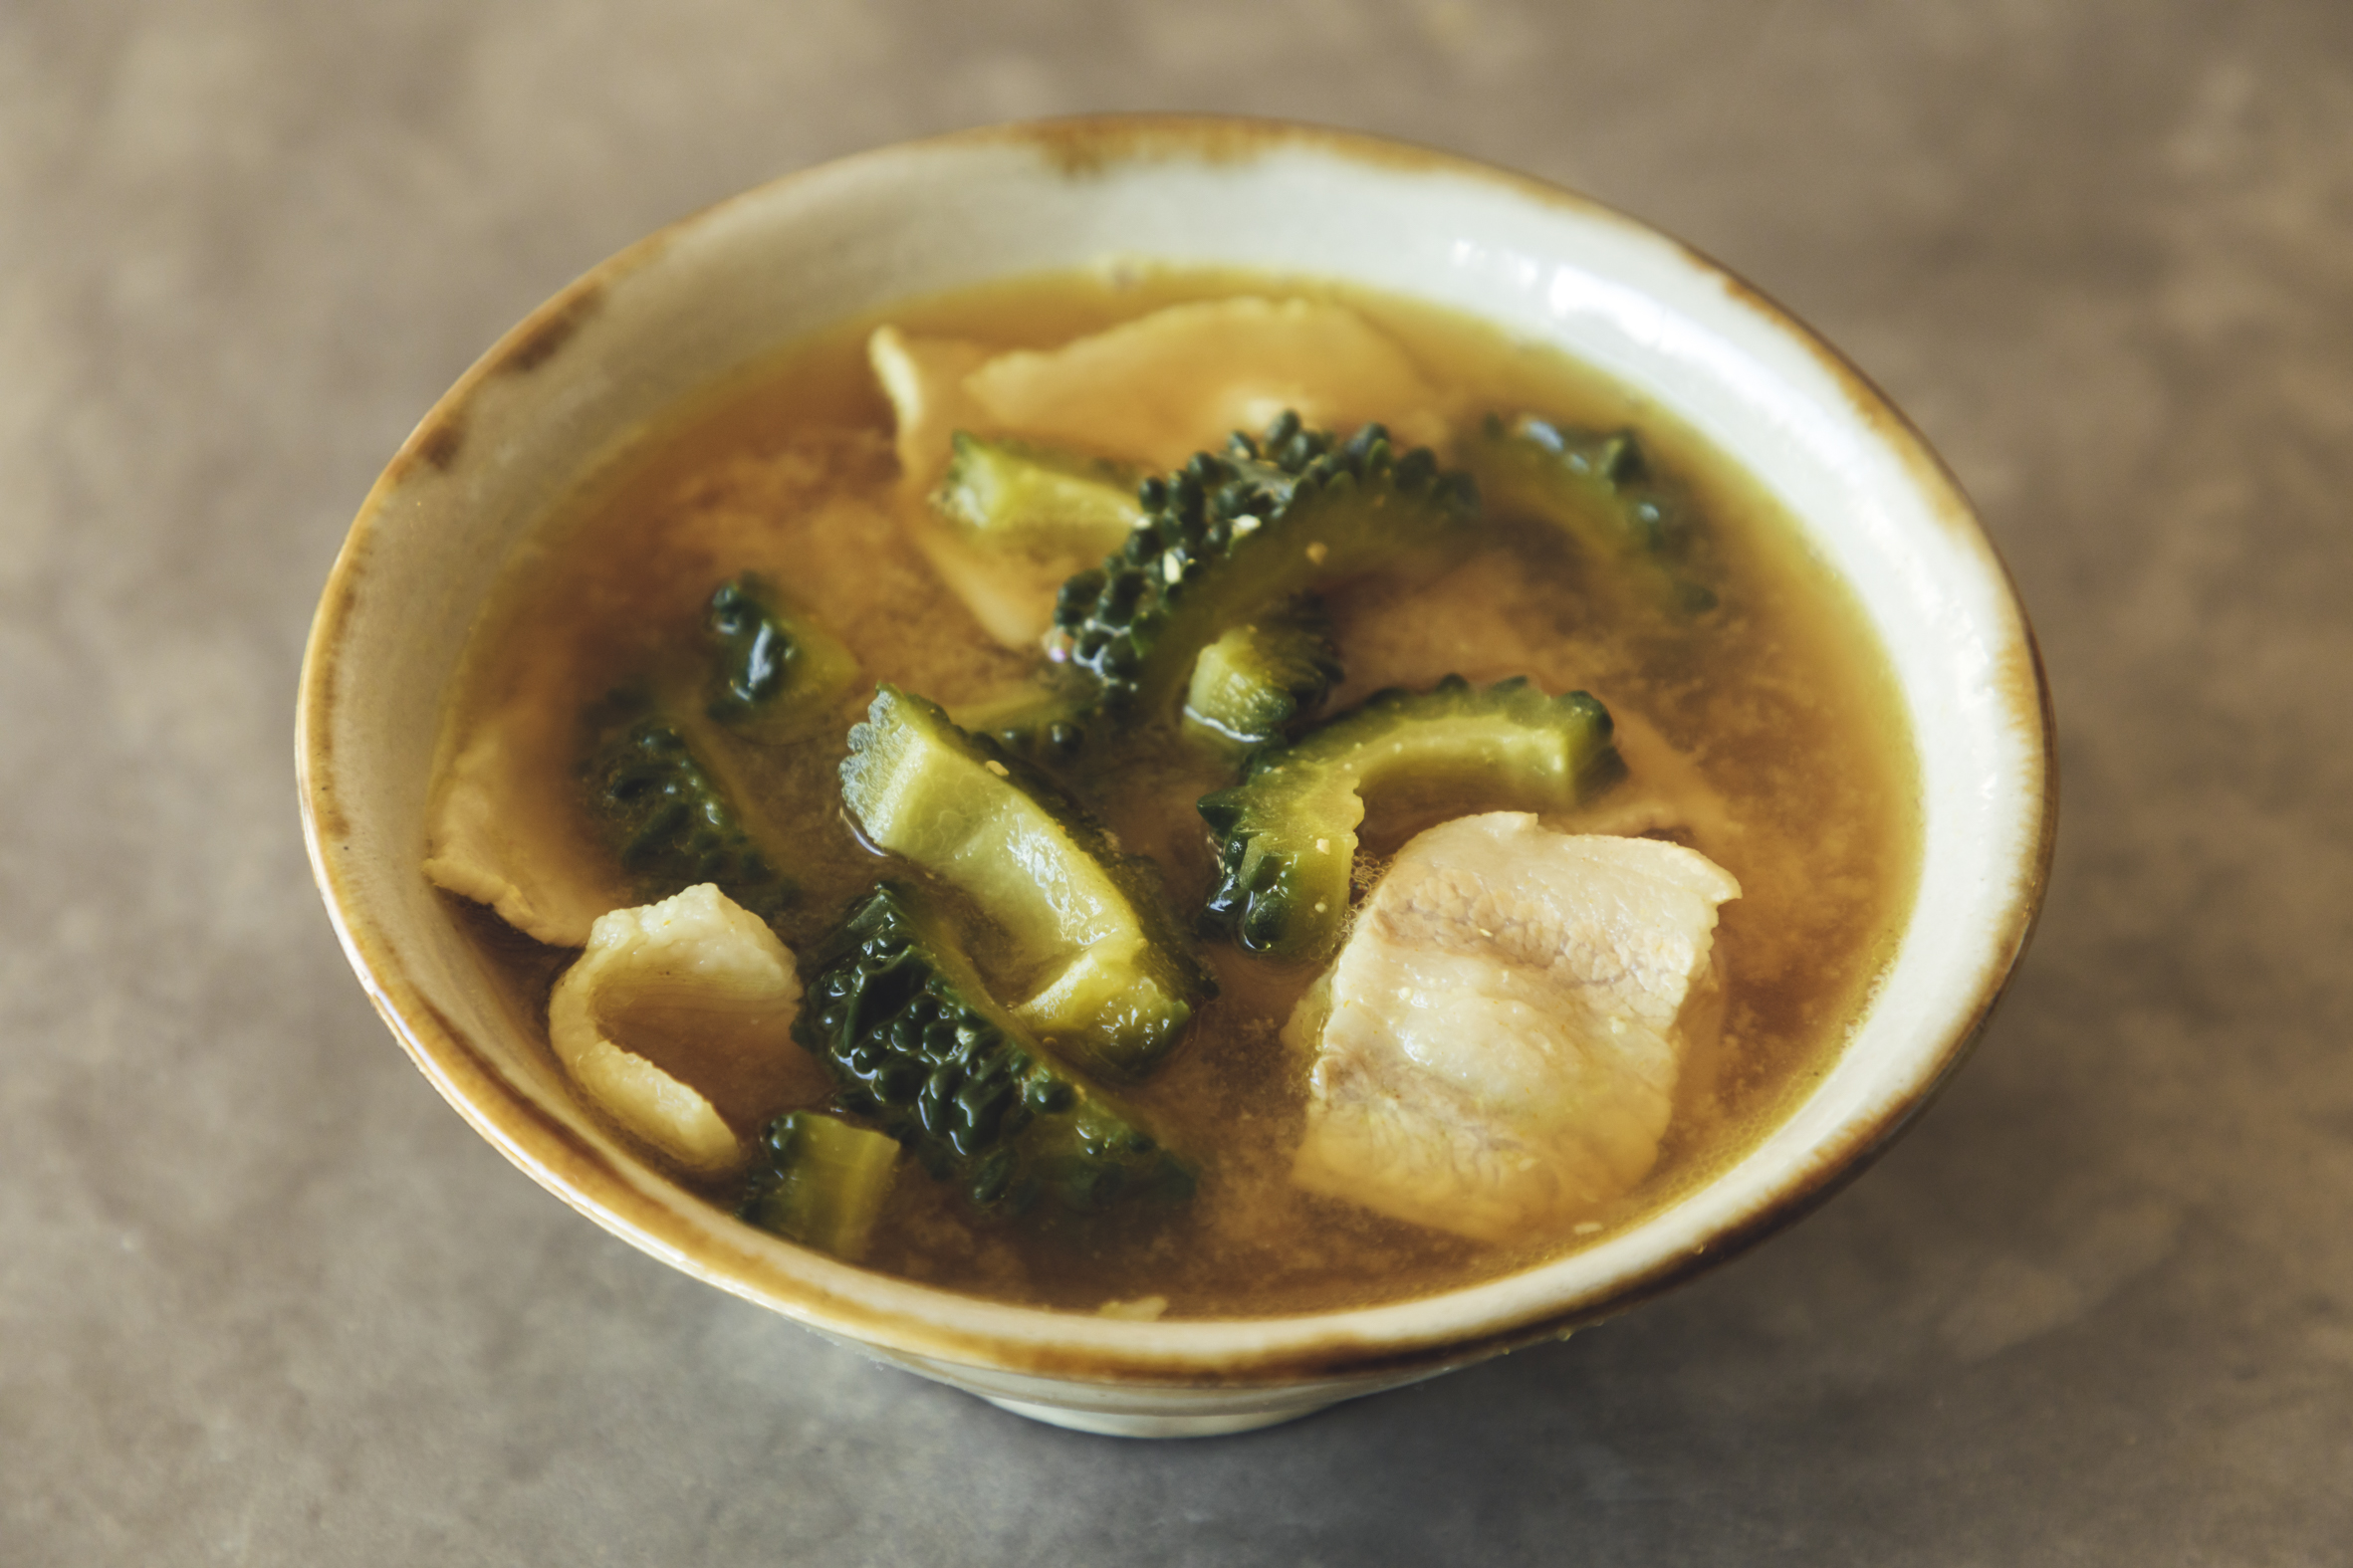 有賀薫の豚汁レボリューション 野菜一品からつくる50のレシピ - 住まい